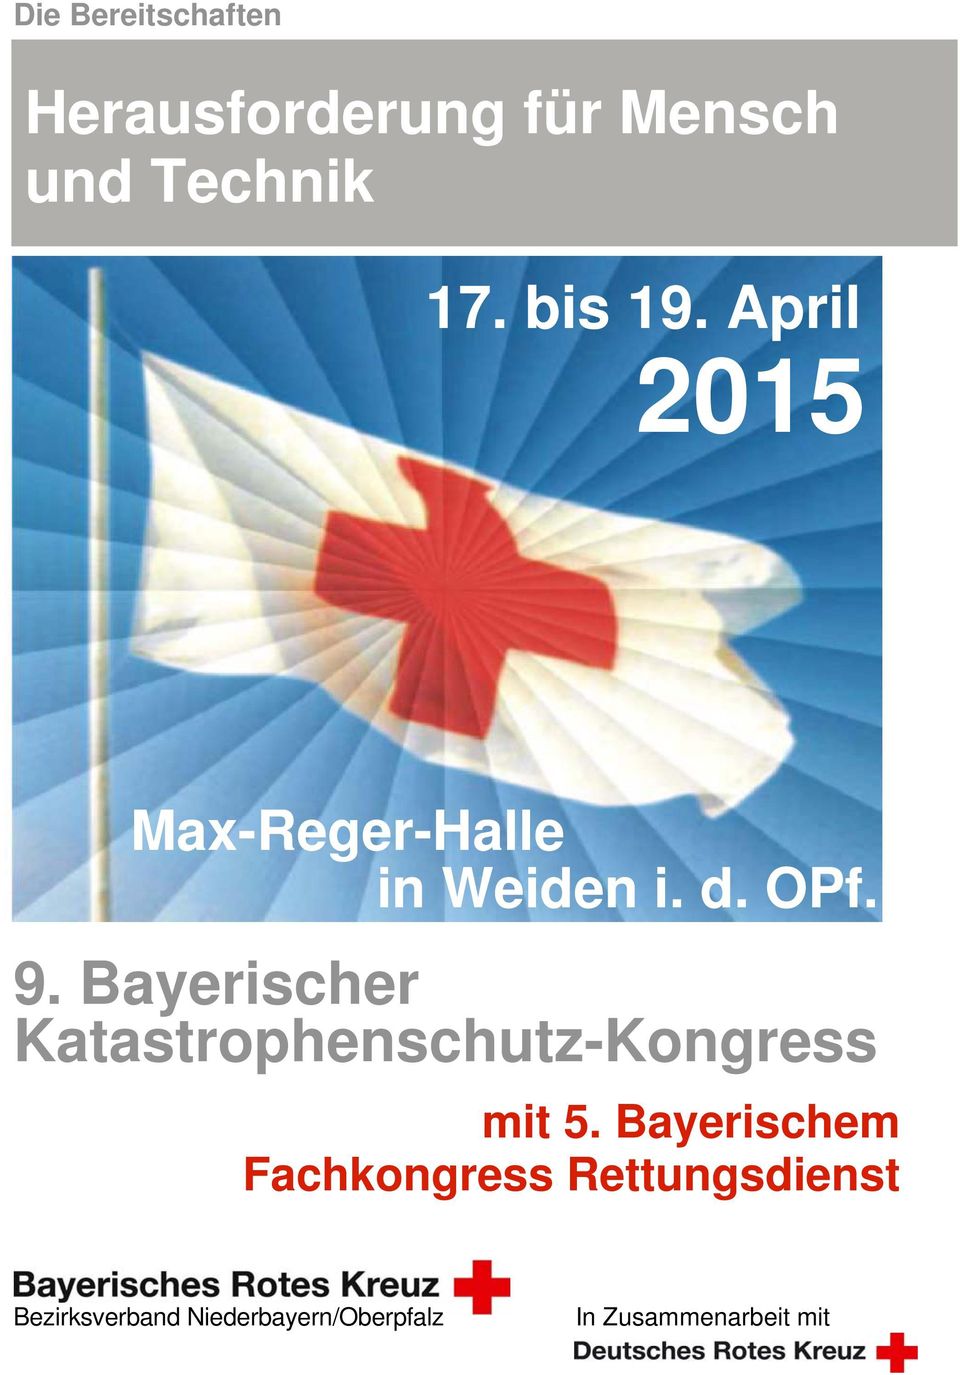 Bayerischer Katastrophenschutz-Kongress mit 5.